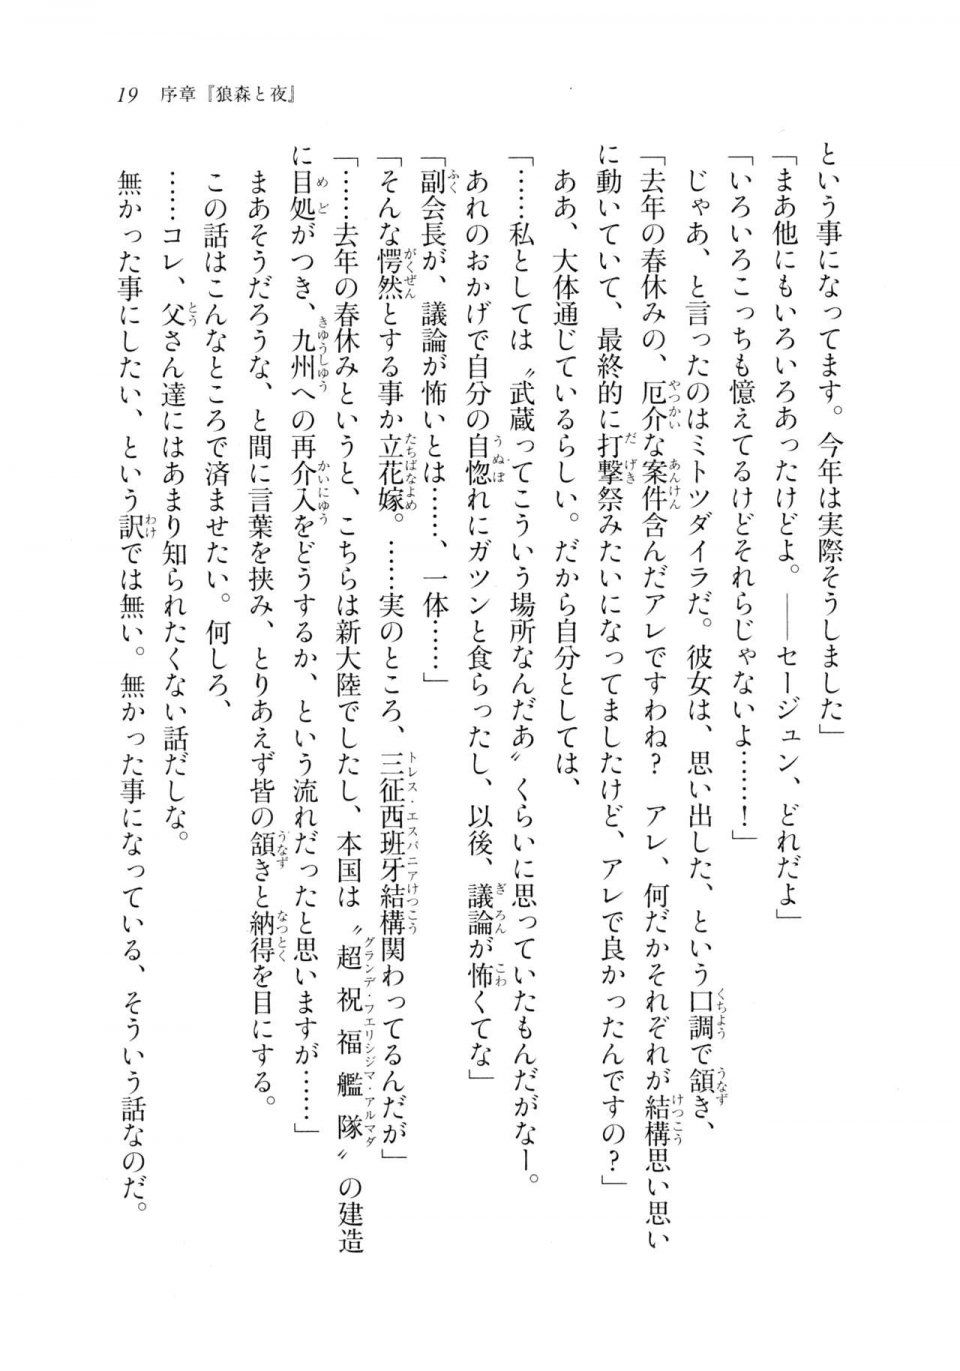 Kyoukai Senjou no Horizon LN Sidestory Vol 2 - Photo #18